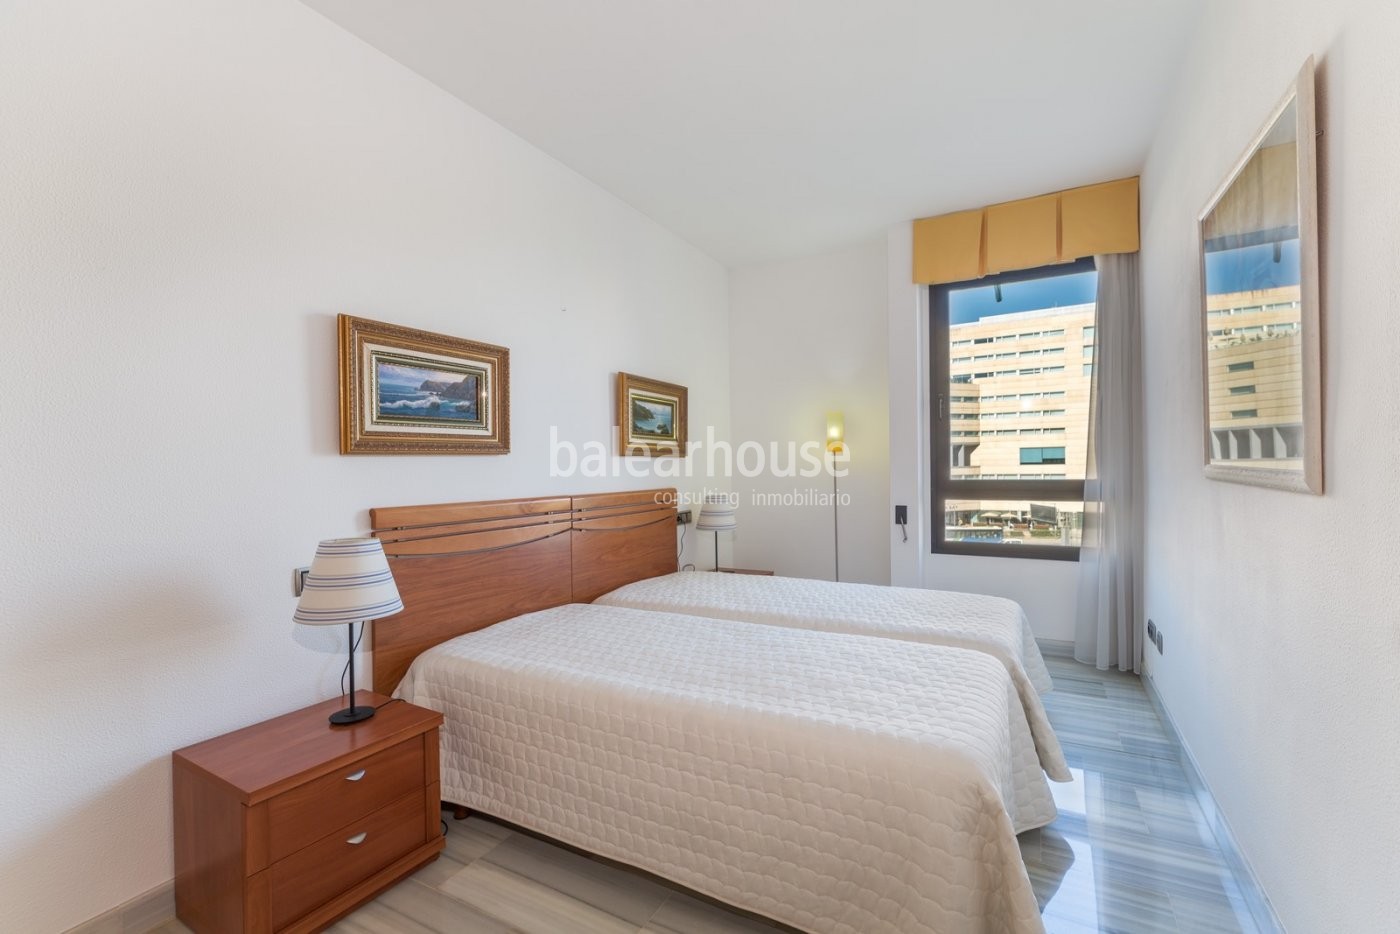 Excelente piso en primera línea de mar con vistas despejadas a toda la bahía de Palma en Portixol